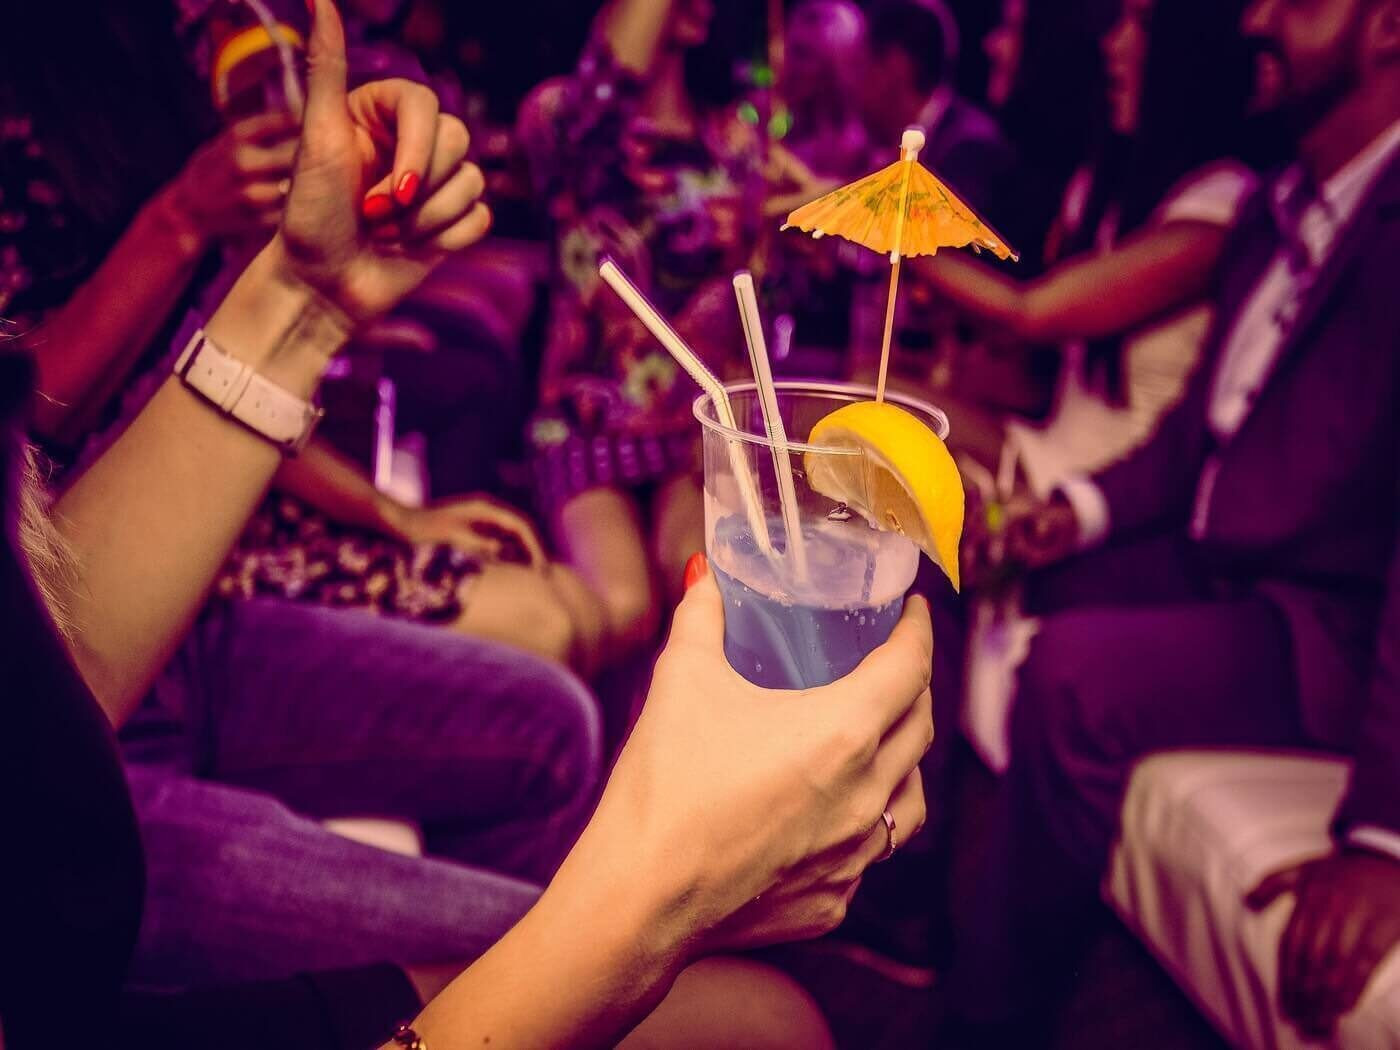 Стакан с коктейлем в руке девушки, тусующейся в ночном клубе